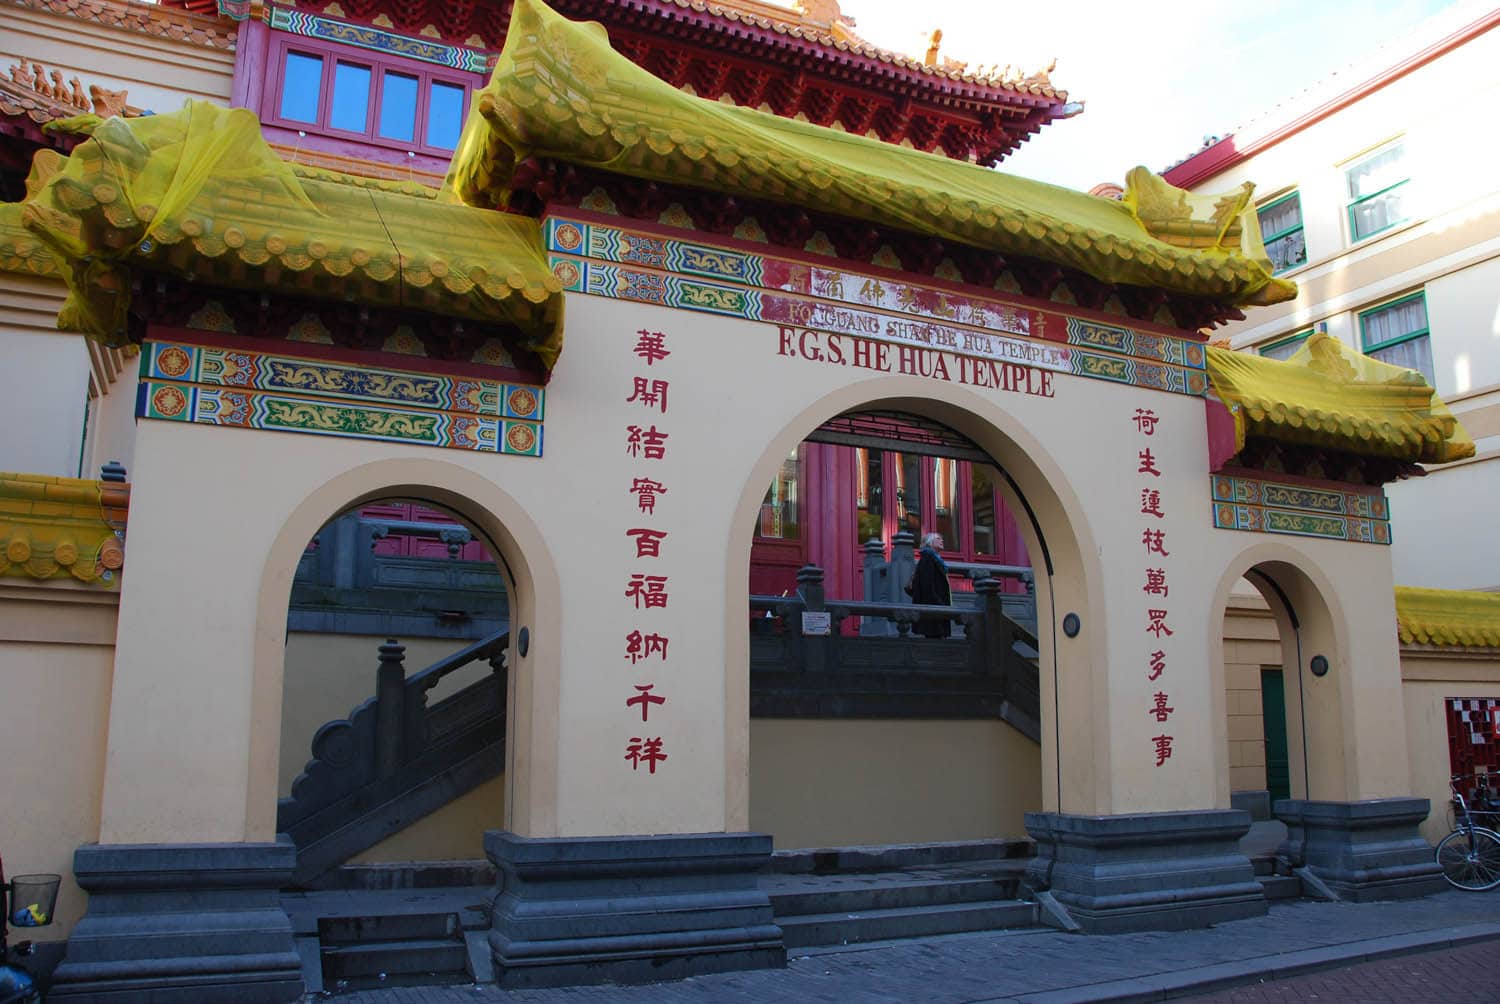 Le Temple He Hua